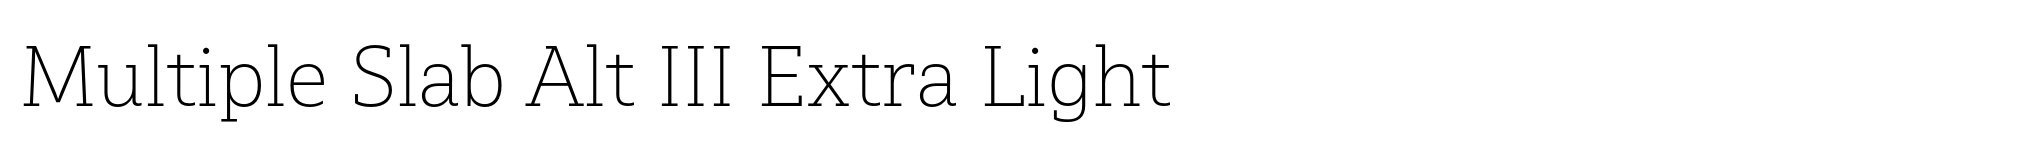 Multiple Slab Alt III Extra Light image